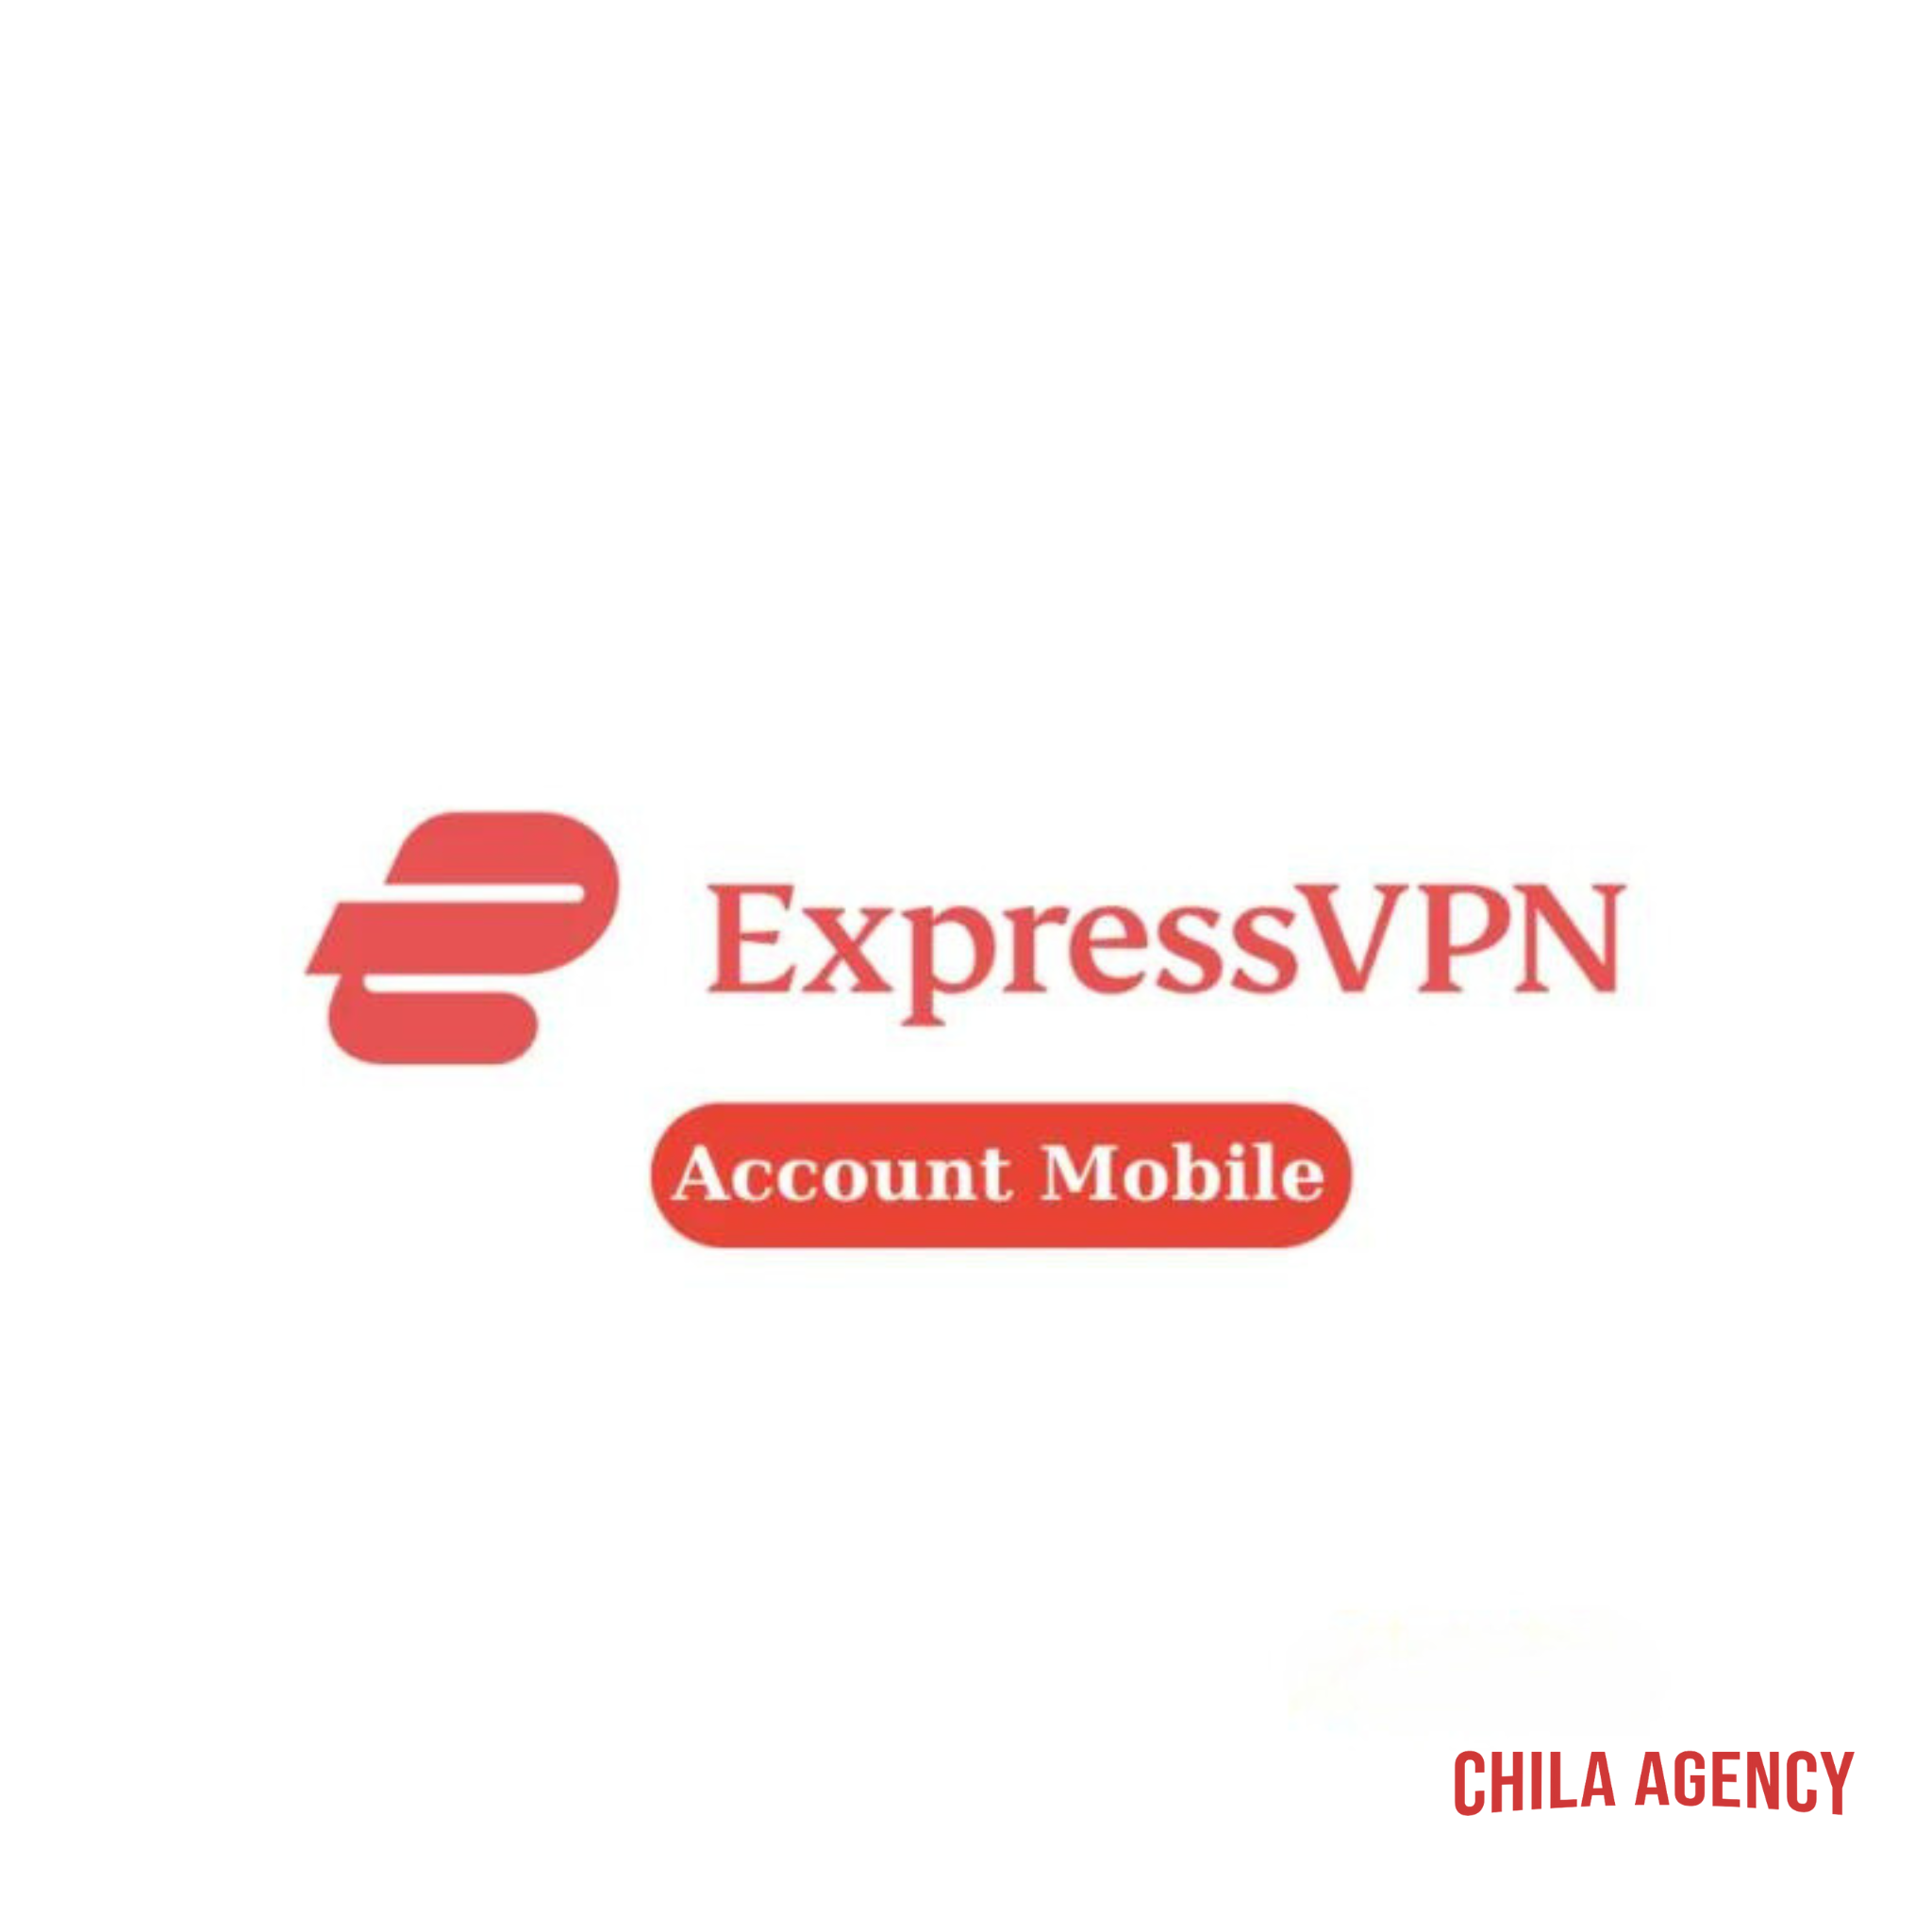  Tài khoản ExpressVPN Mobile 12 tháng – Dịch vụ VPN tốc độ cao, an toàn và ẩn danh 